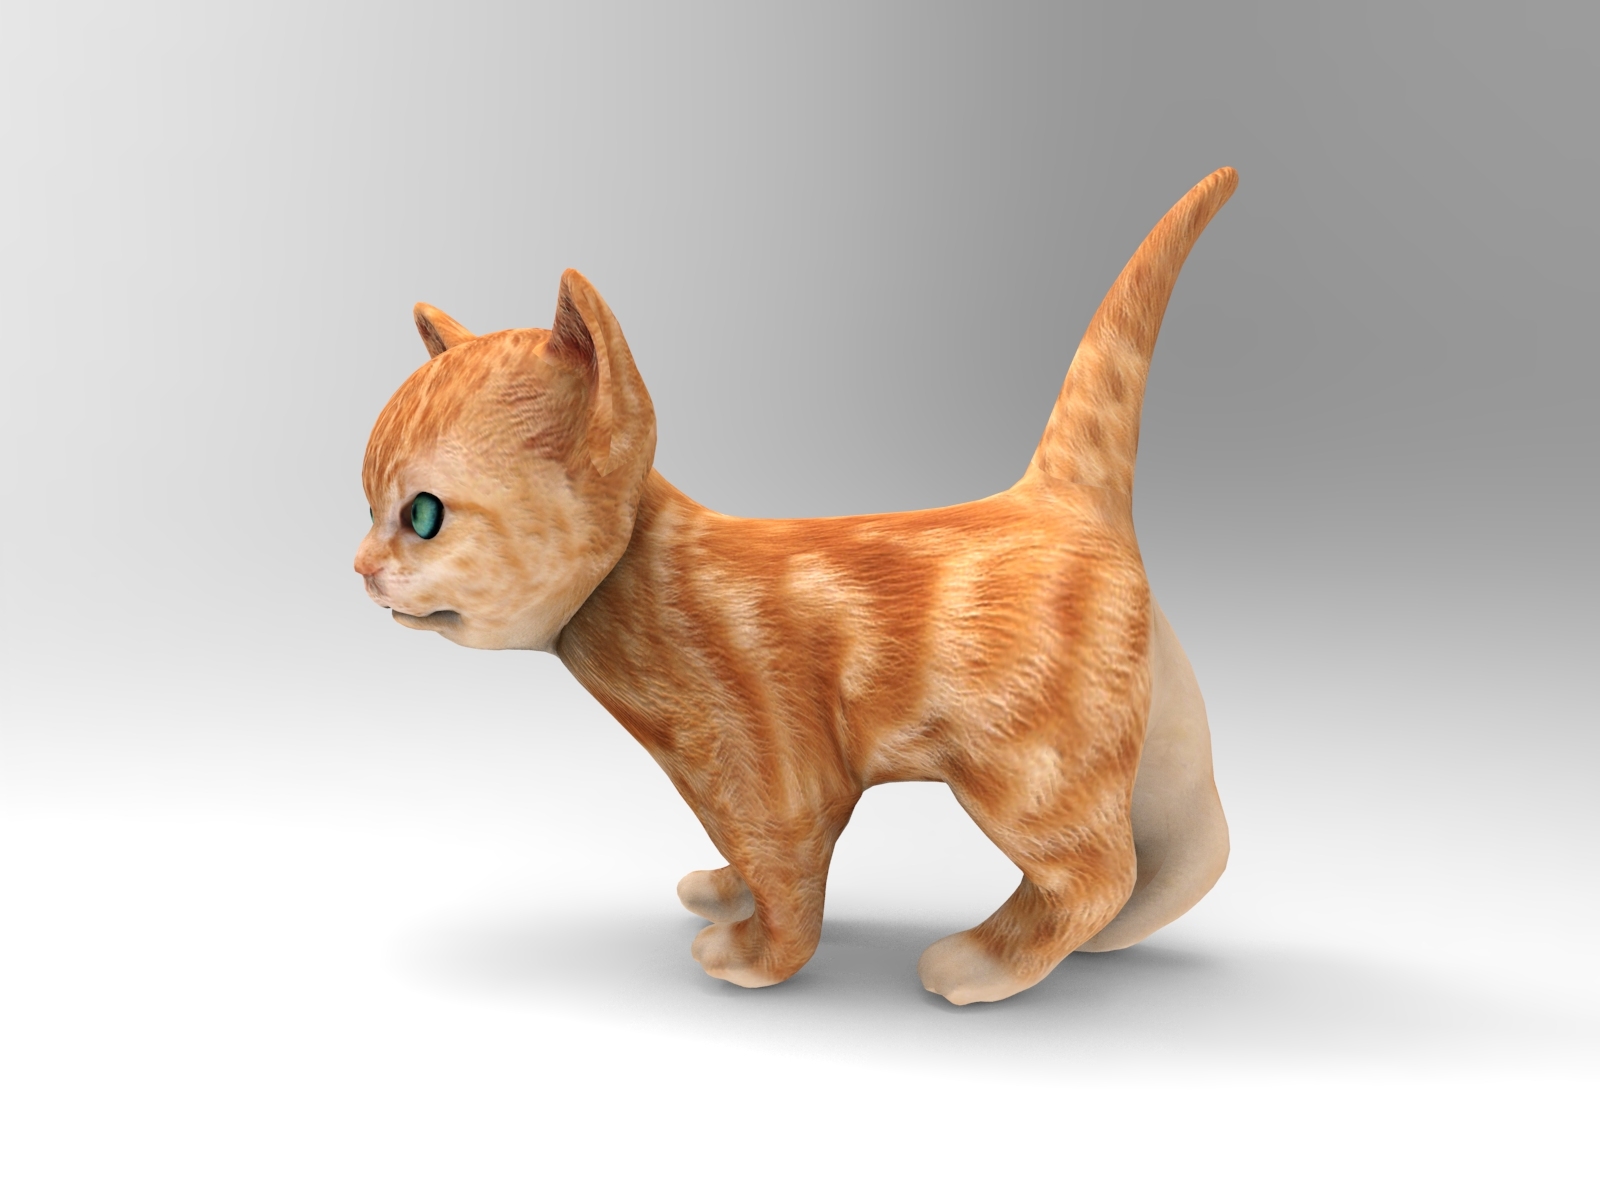 Cute Cat Animation 3d Model Turbosquid 1217230